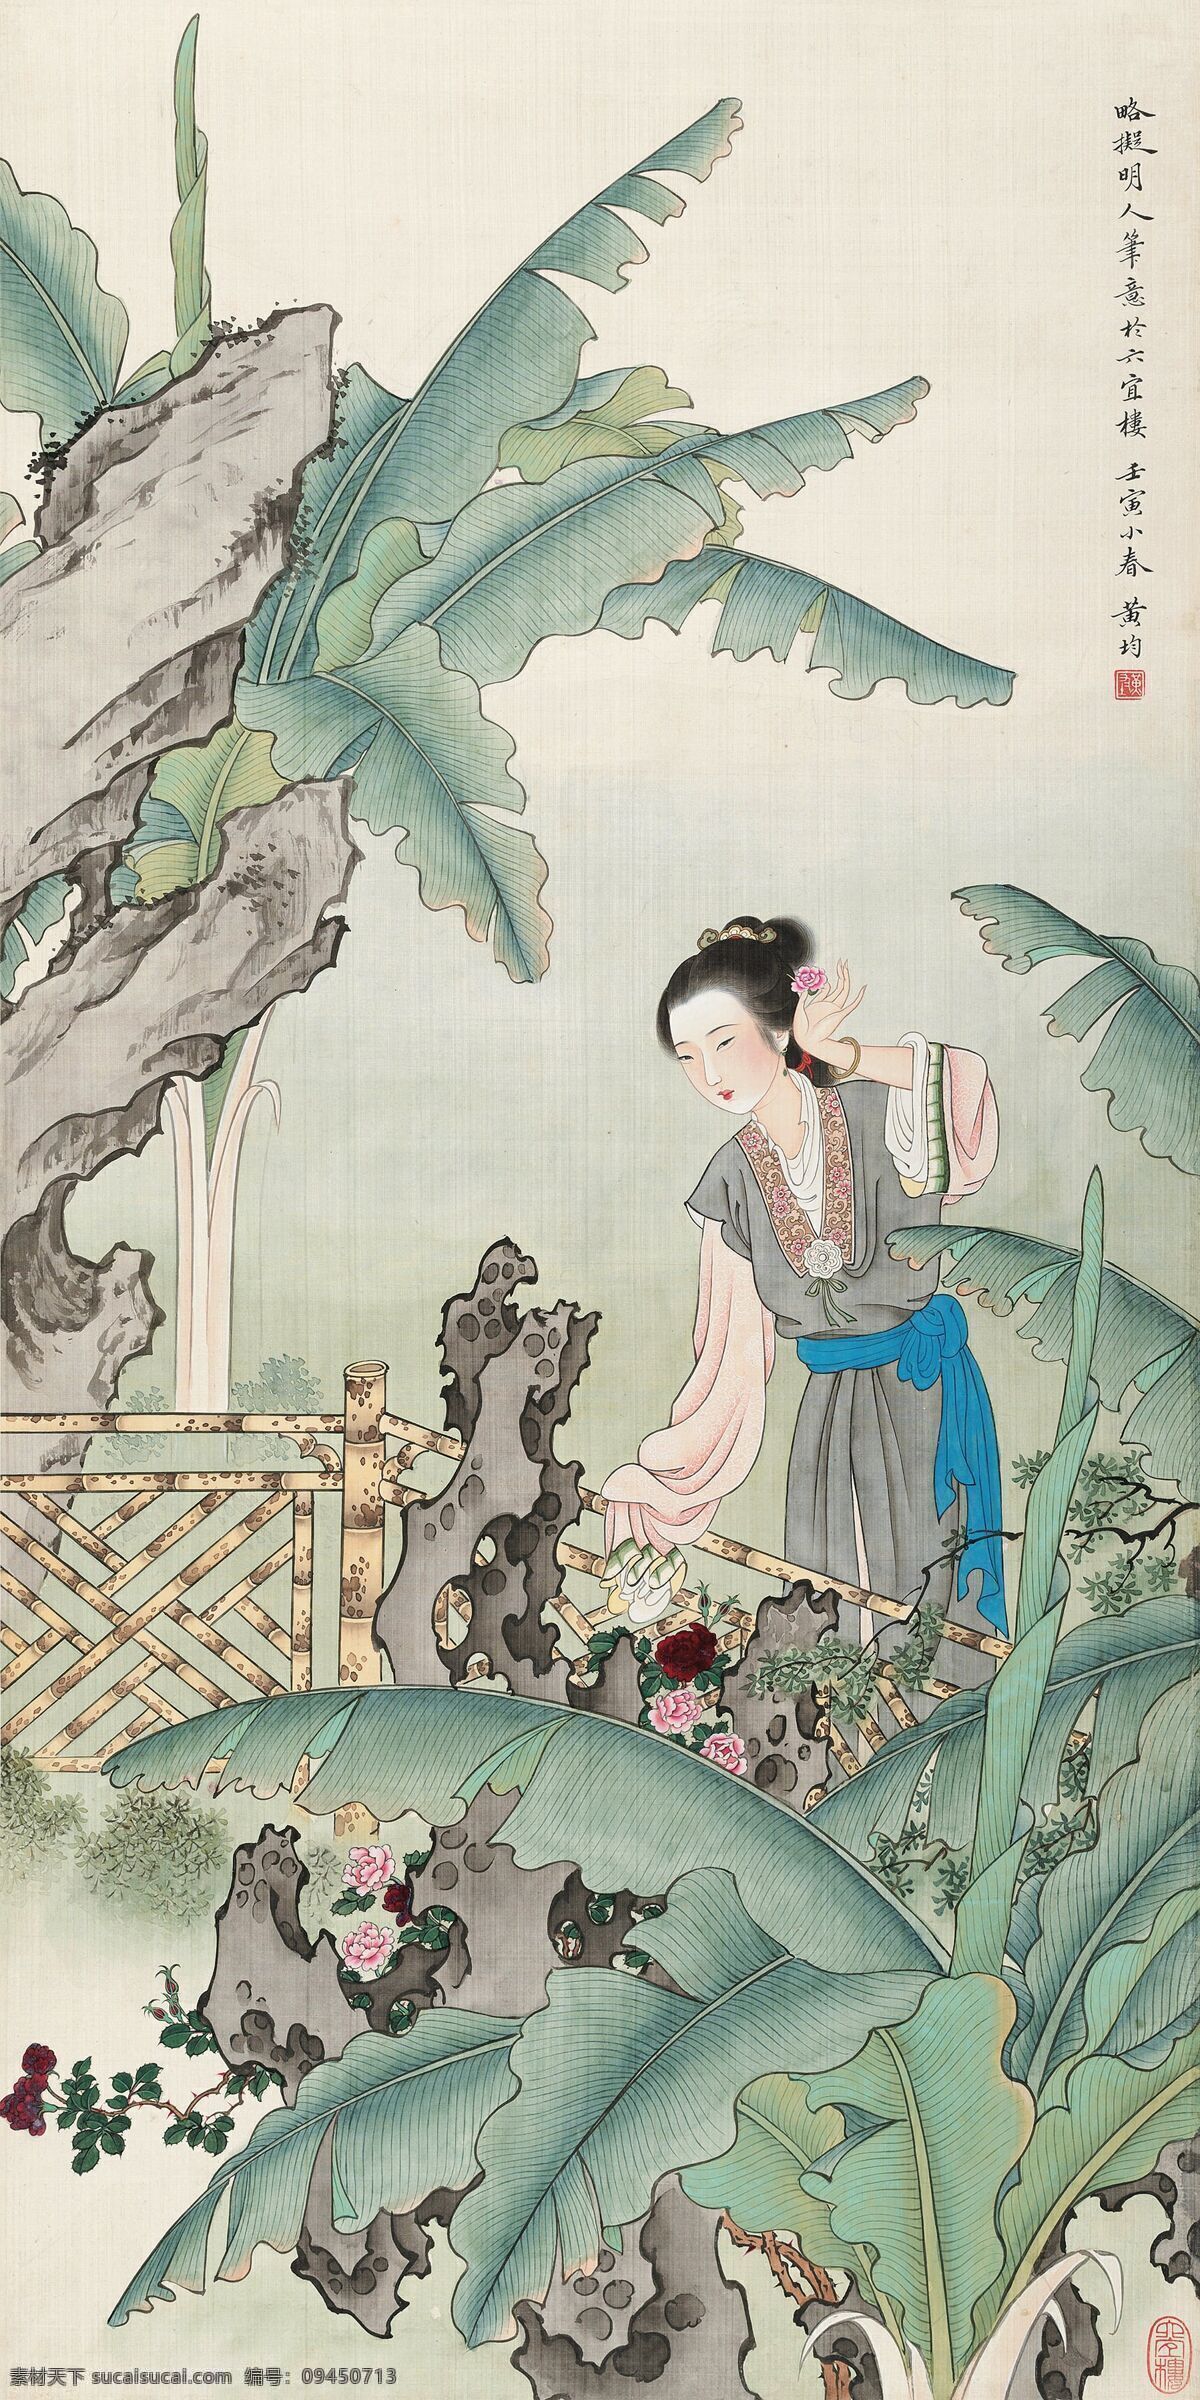 巴蕉仕女图 黄均作品 花园中 年轻女子 戴花 中国古代画 中国古画 文化艺术 绘画书法